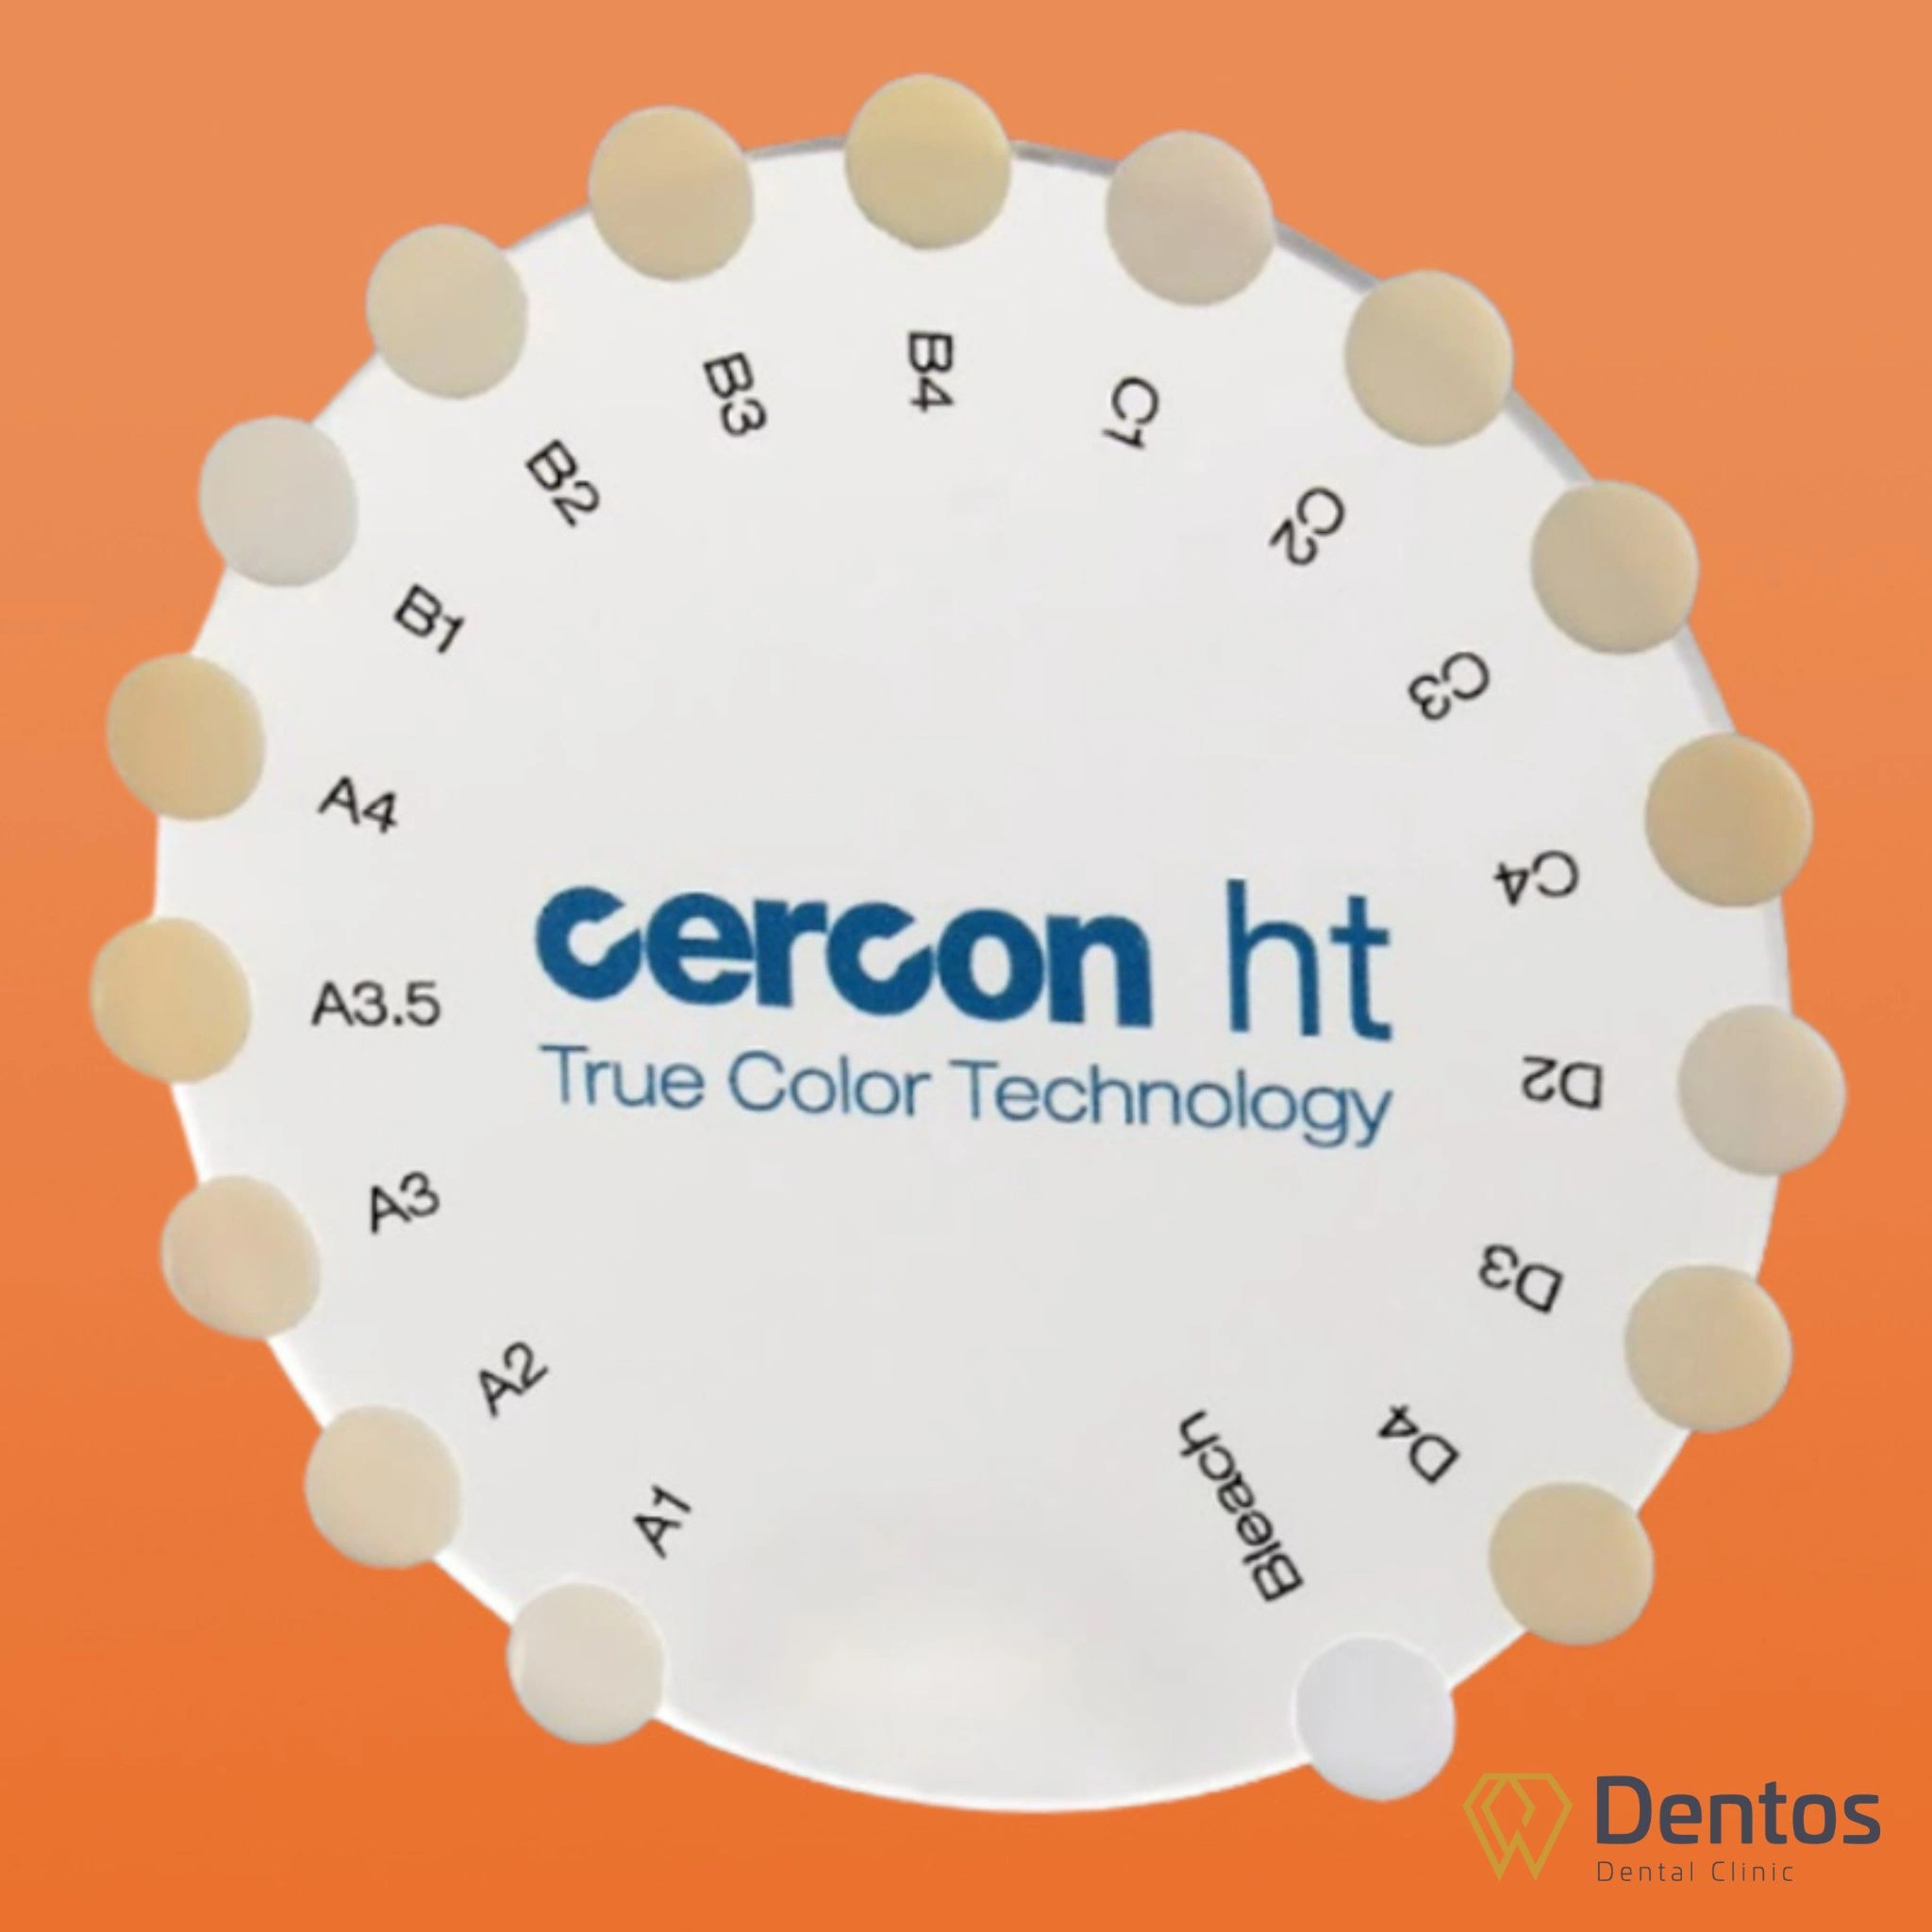 Với công nghệ True Color, Cercon ht được đánh giá là “răng sứ số 1” về độ chính xác màu sắc